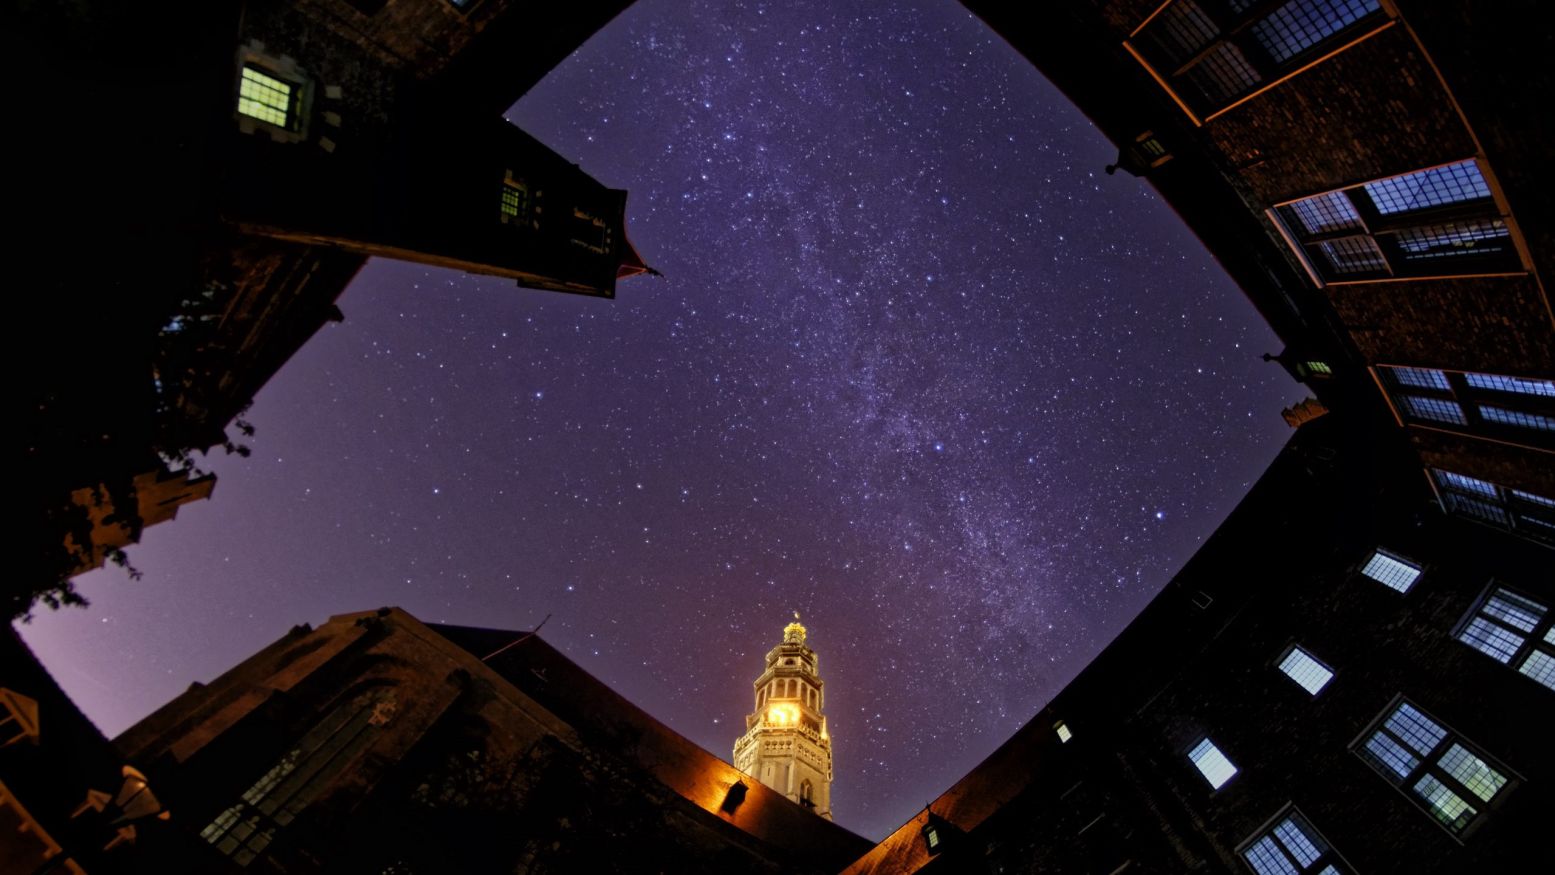 Nacht van de Nacht 2016 in Middelburg: de Melkweg was te zien. Foto: Jesse Meliefste